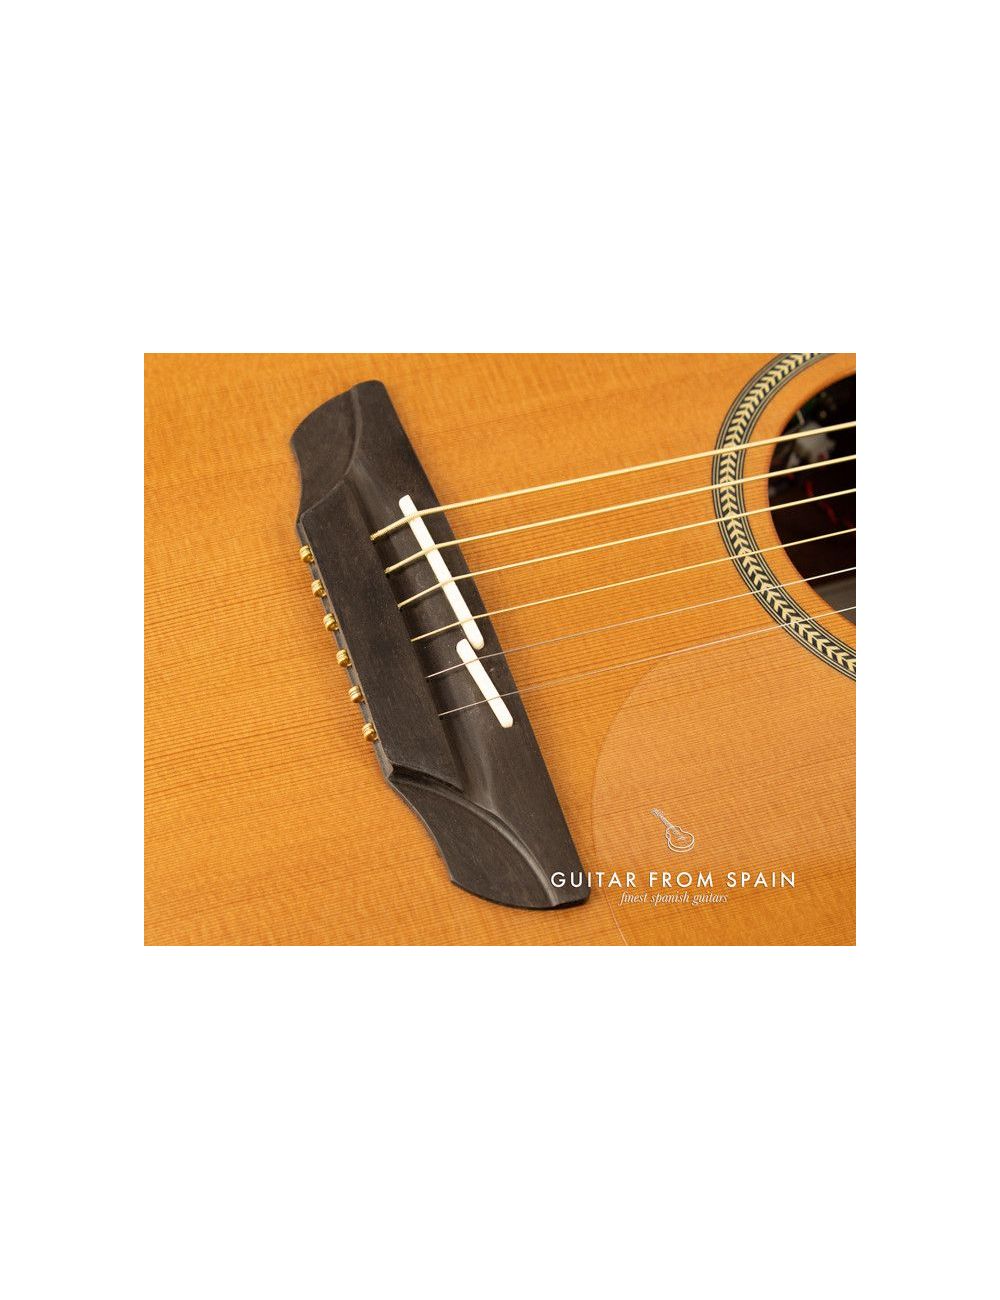 Alhambra Auditorium Model 1272 Guitarra acústica